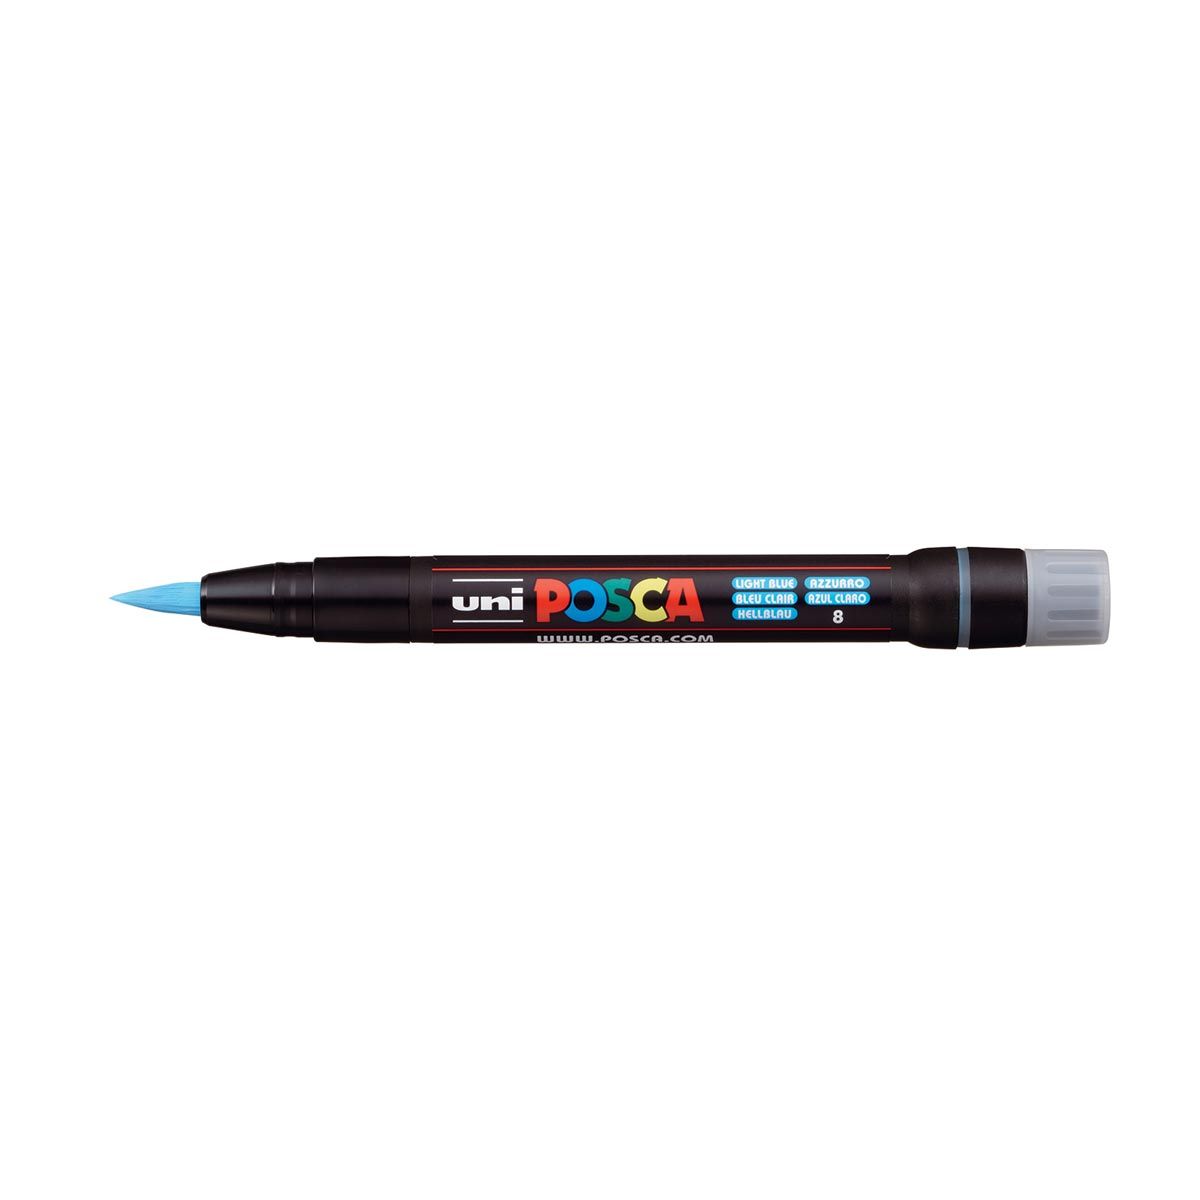 UNI POSCA PCF-350 Brush Tipped Marker Pen – Light Blue